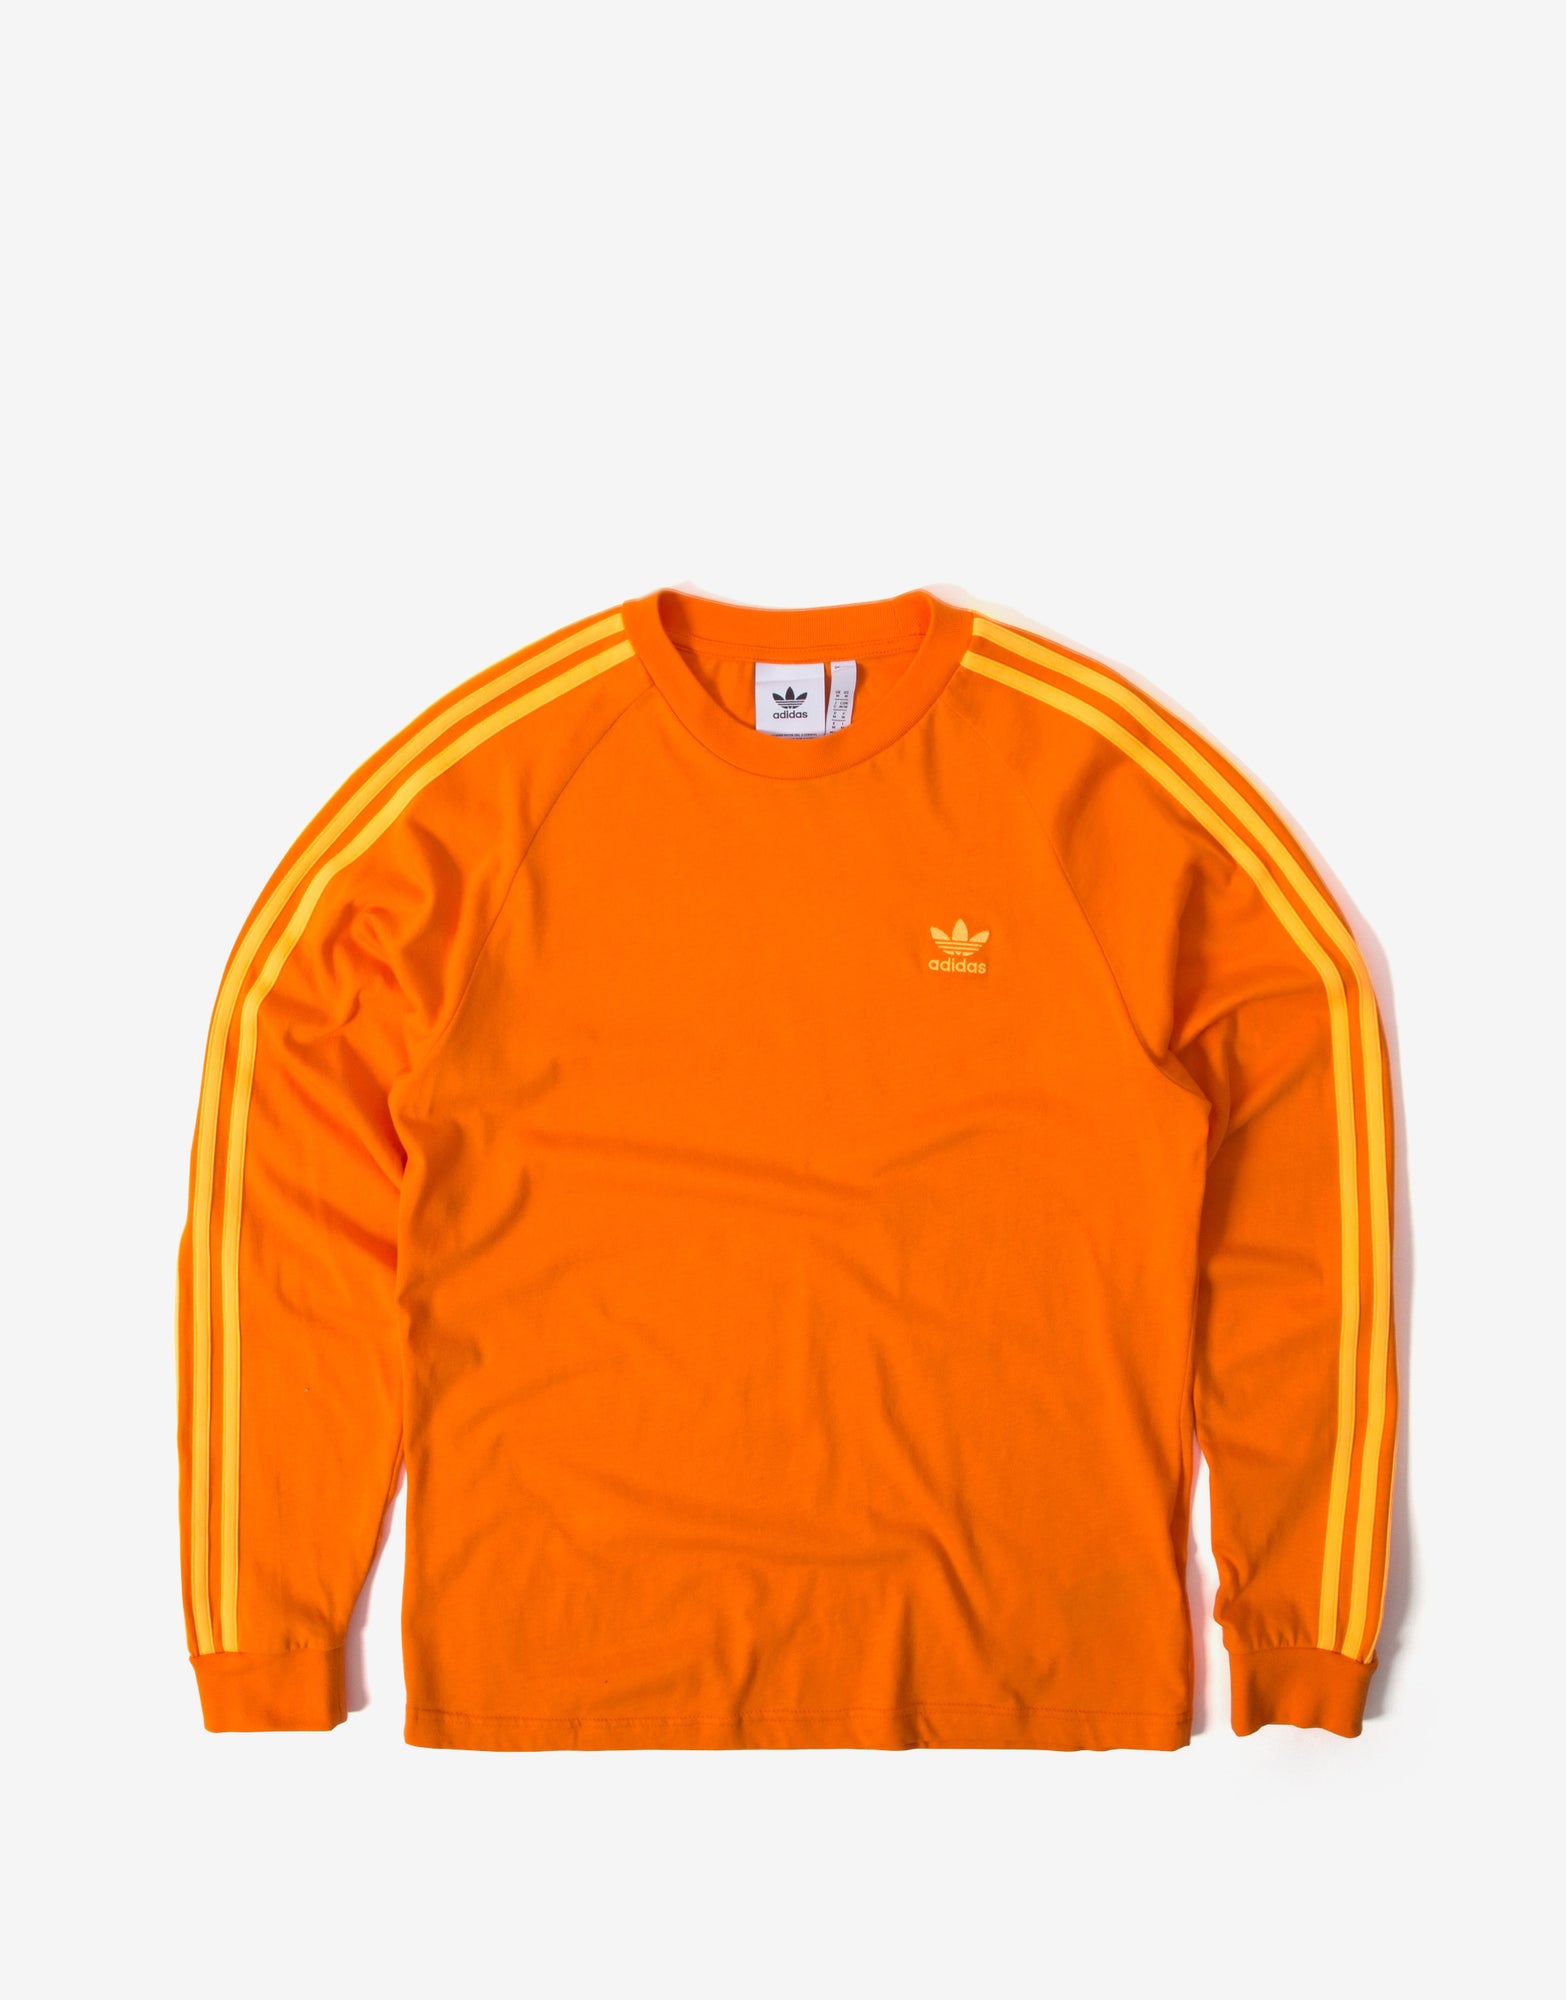 orange adidas long sleeve